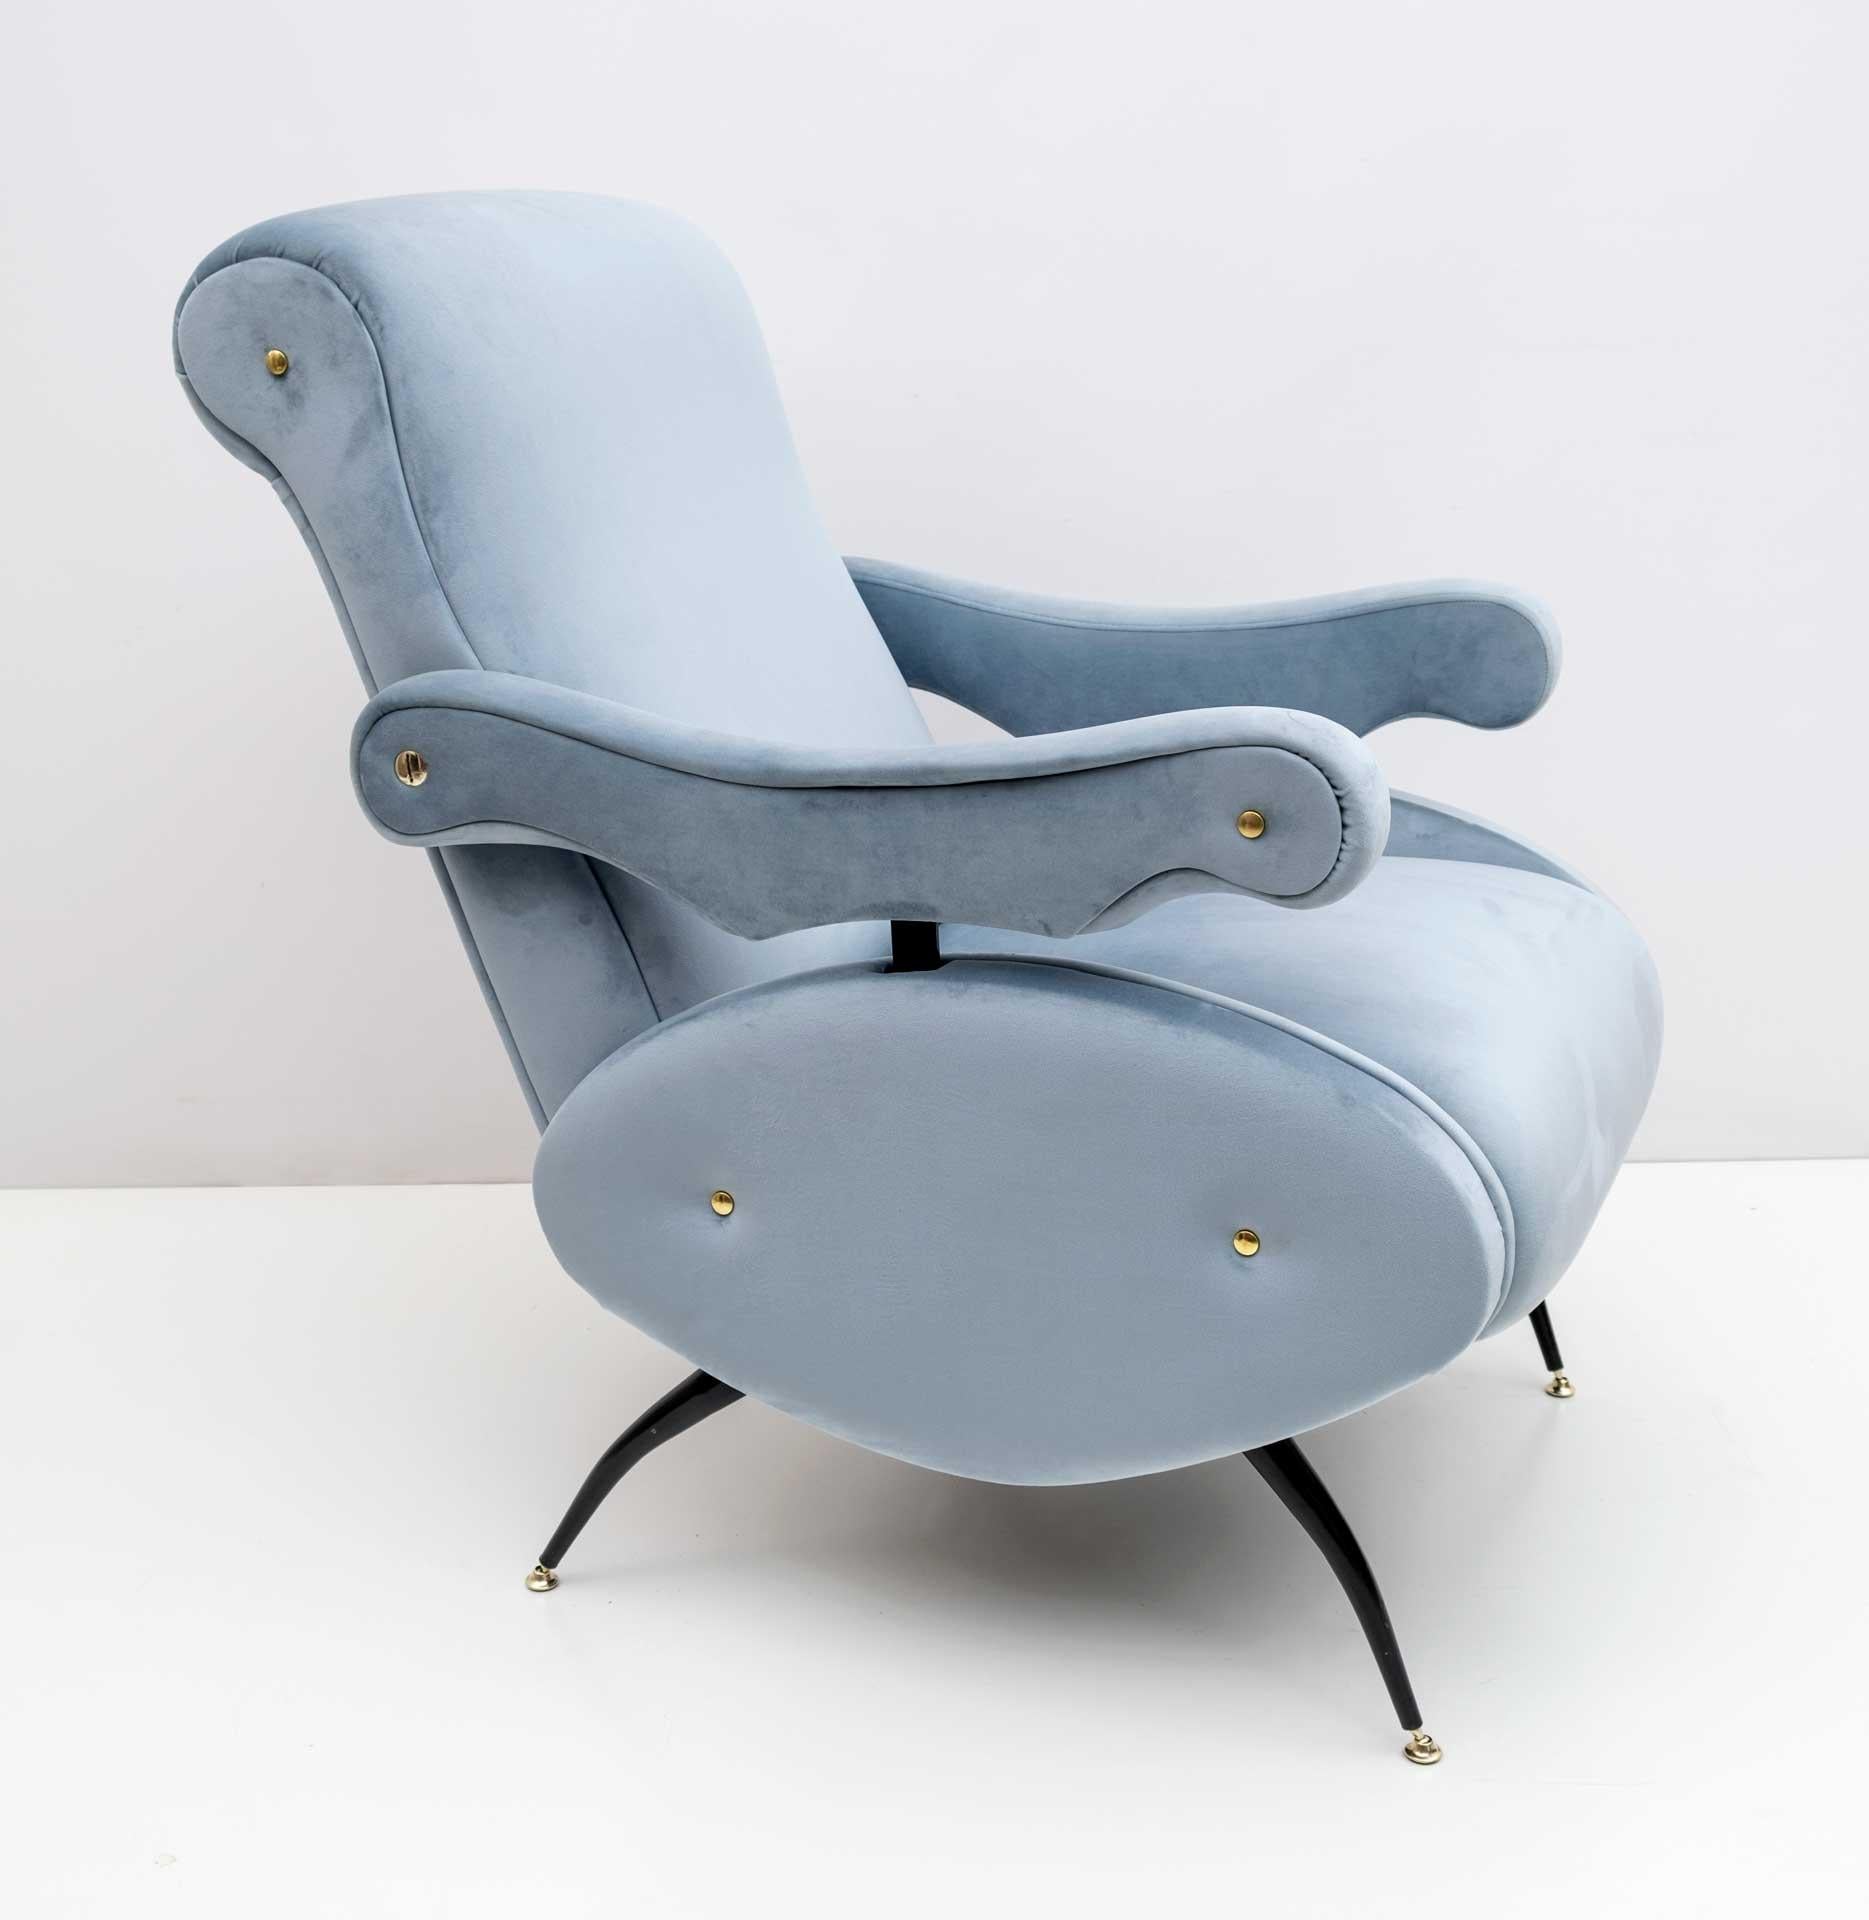 Fauteuil inclinable conçu par Nello Pini pour Novarredo dans les années 1950. Le fauteuil a été restauré et tapissé de velours bleu clair.